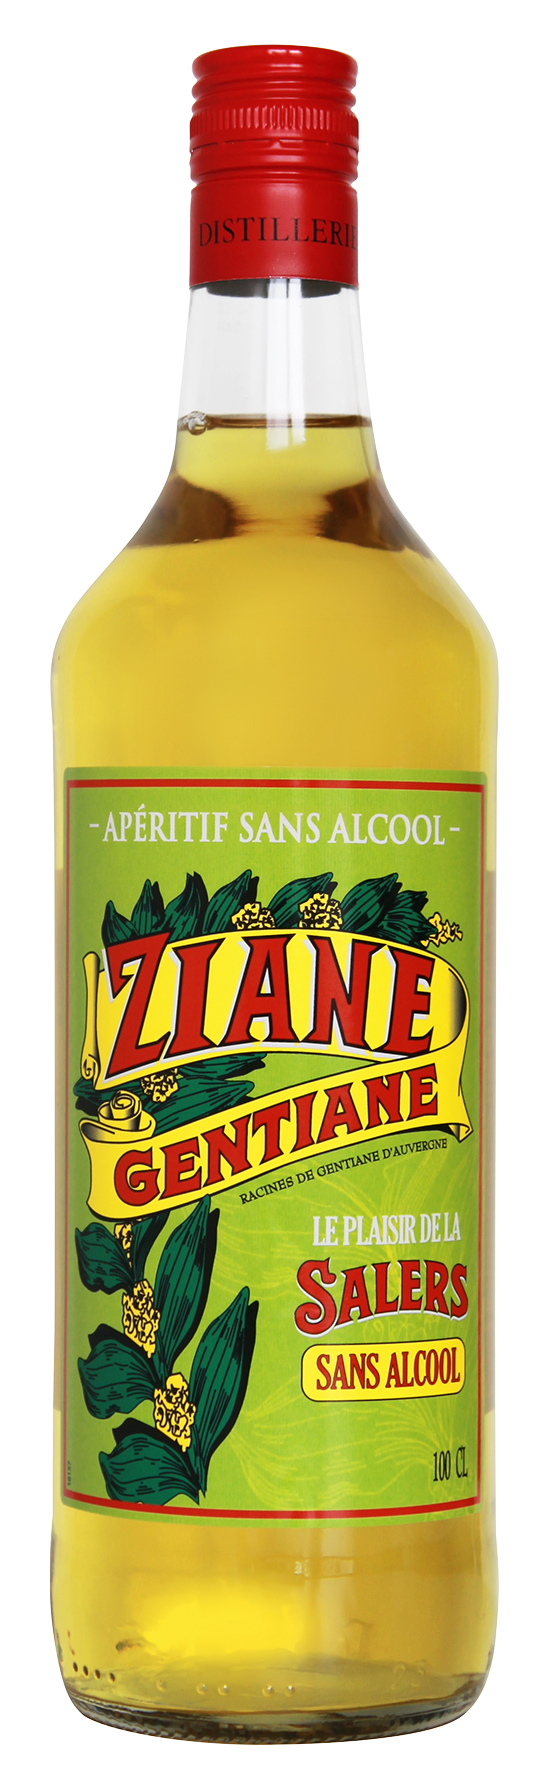 Apéritif Sans Alcool Ziane SALERS - 100cl